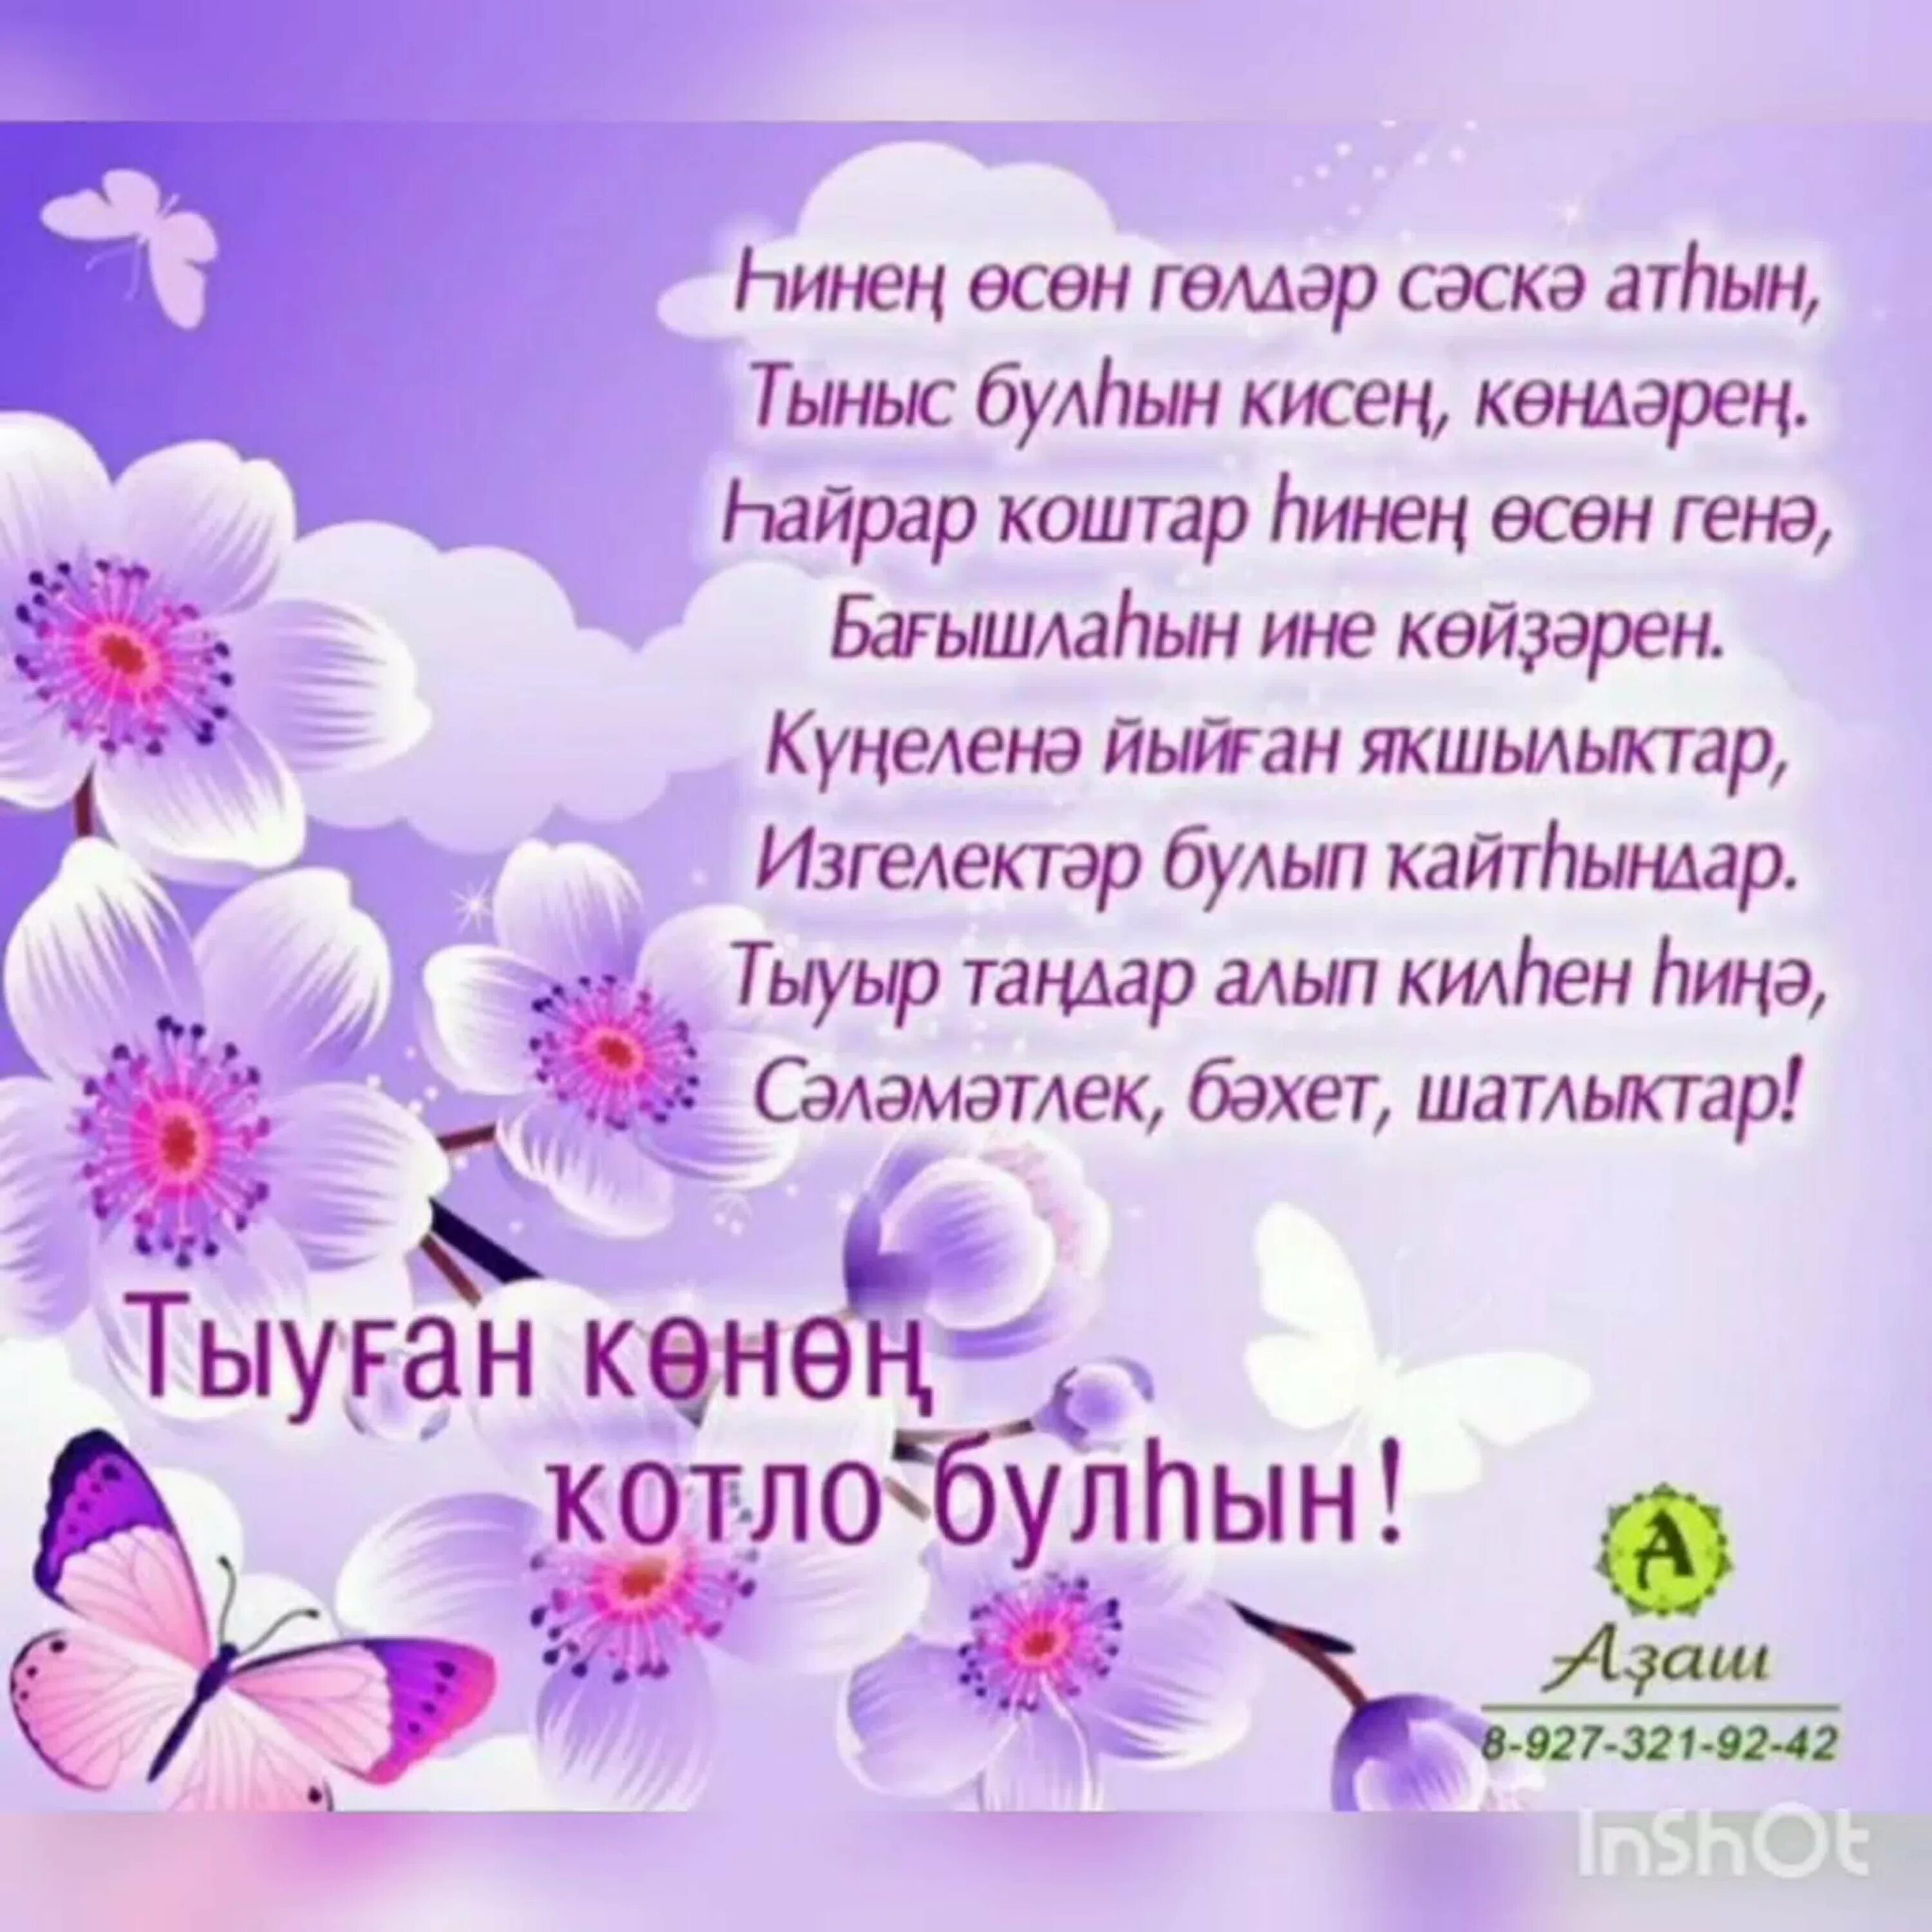 Башкирские стихи на день рождения. Поздравления с днём рождения на башкирском. Поздравления на башкирском языке. Поздравления с юбилеем женщине на башкирском языке.